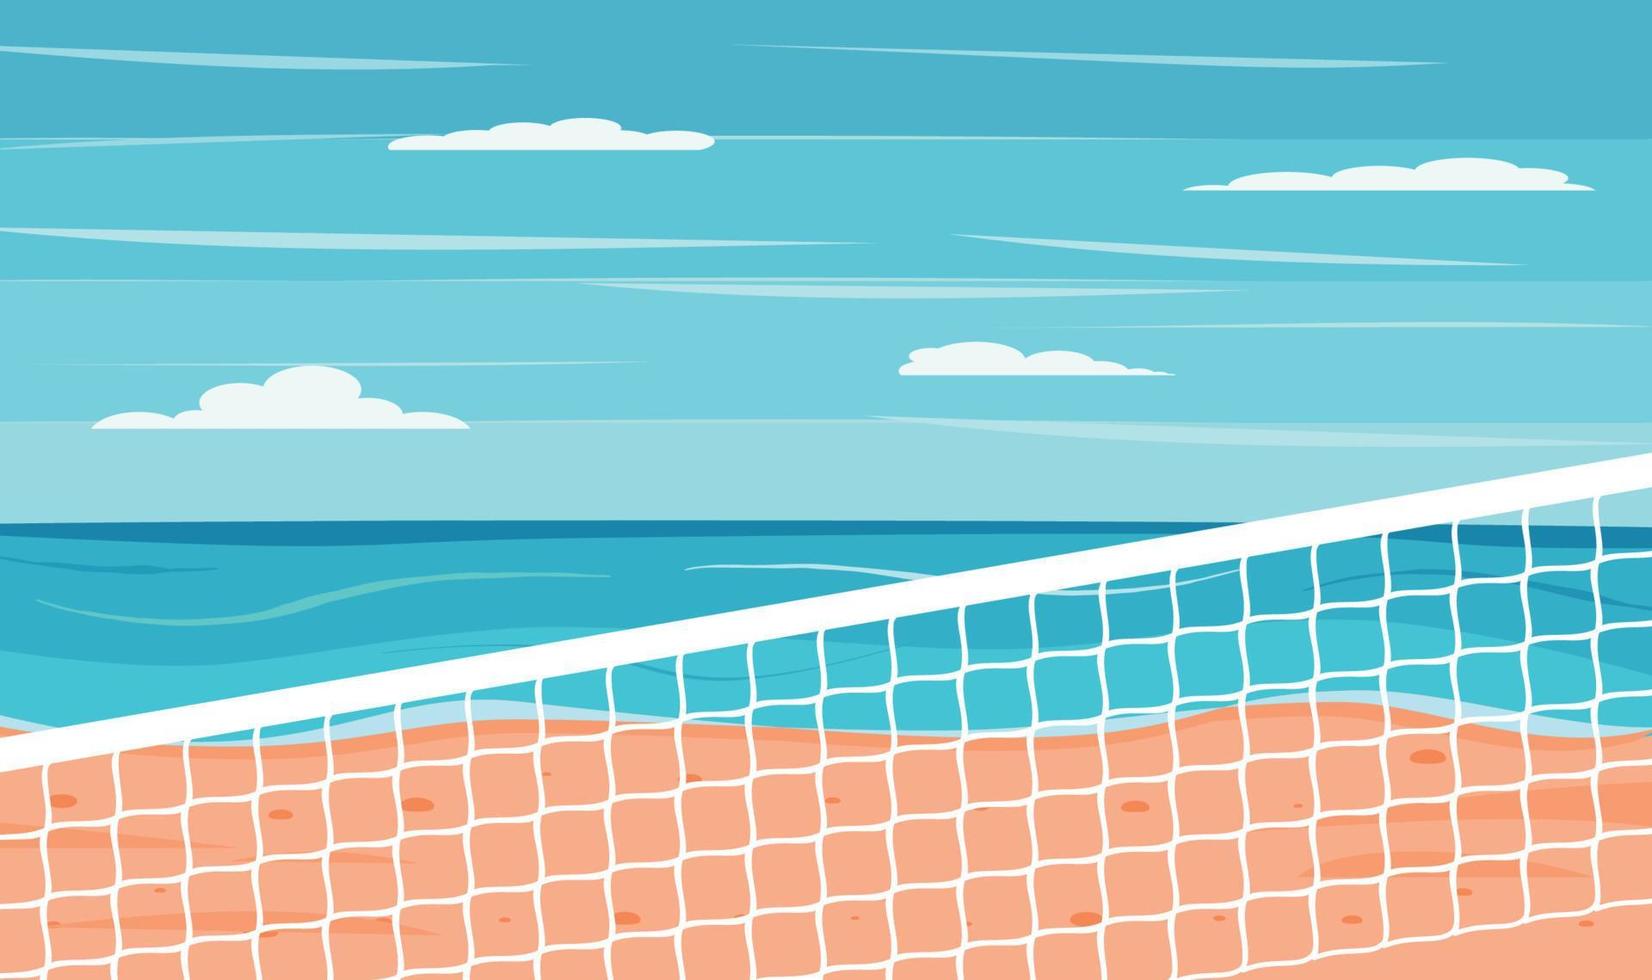 Volleyballnetz und Ball auf Sand im Sommerhintergrund. aktiver lebensstil am strand mit sand in der nähe von meer oder ozean mit himmel. Beachvolleyballfeld mit Meereshintergrund. vektor